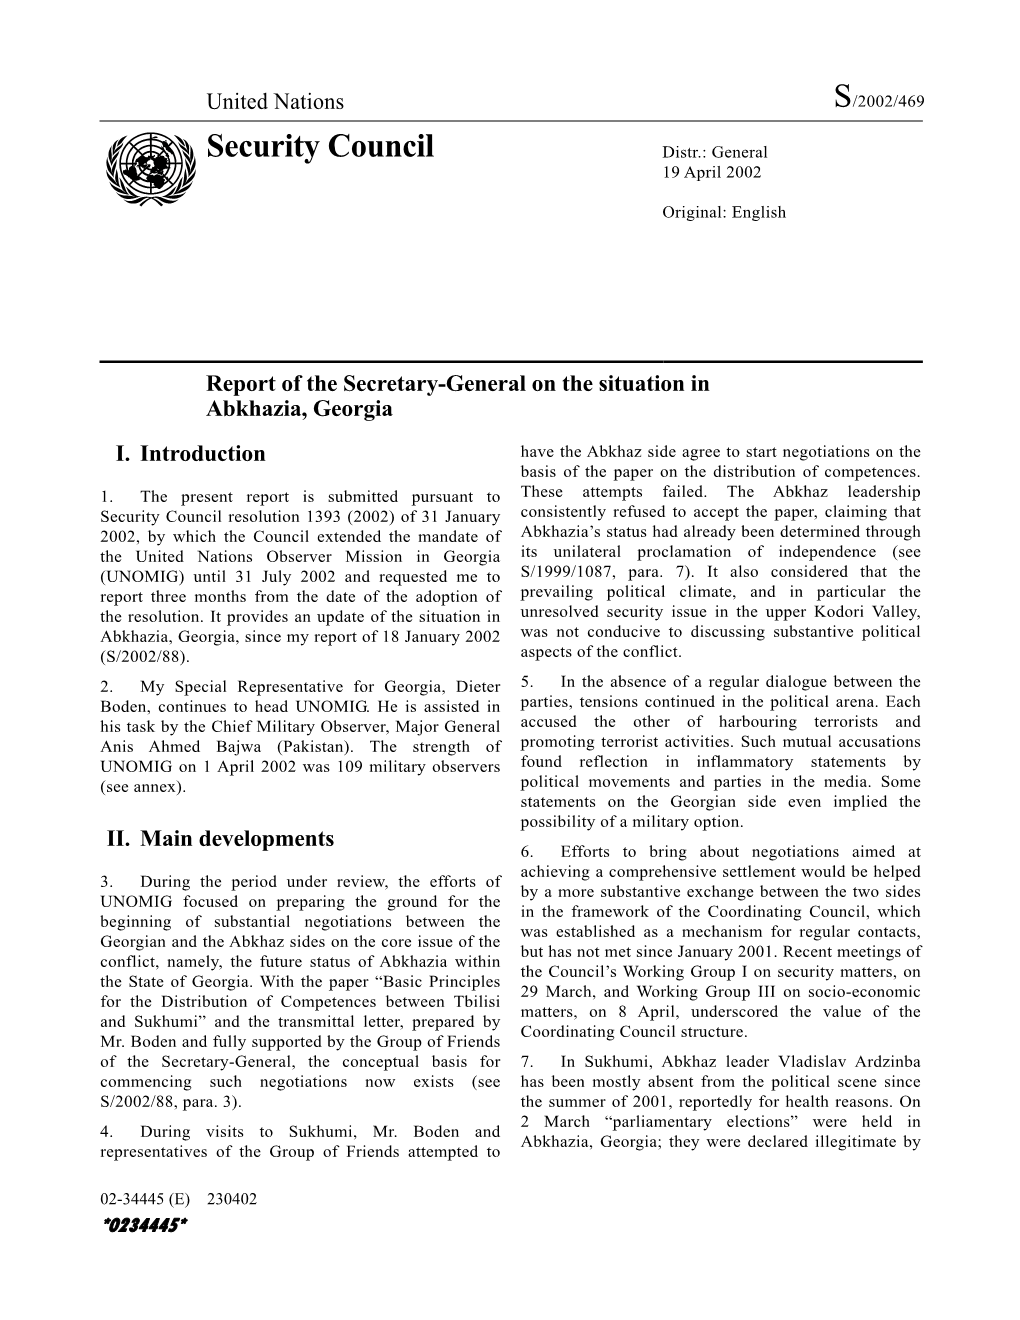 Security Council Distr.: General 19 April 2002